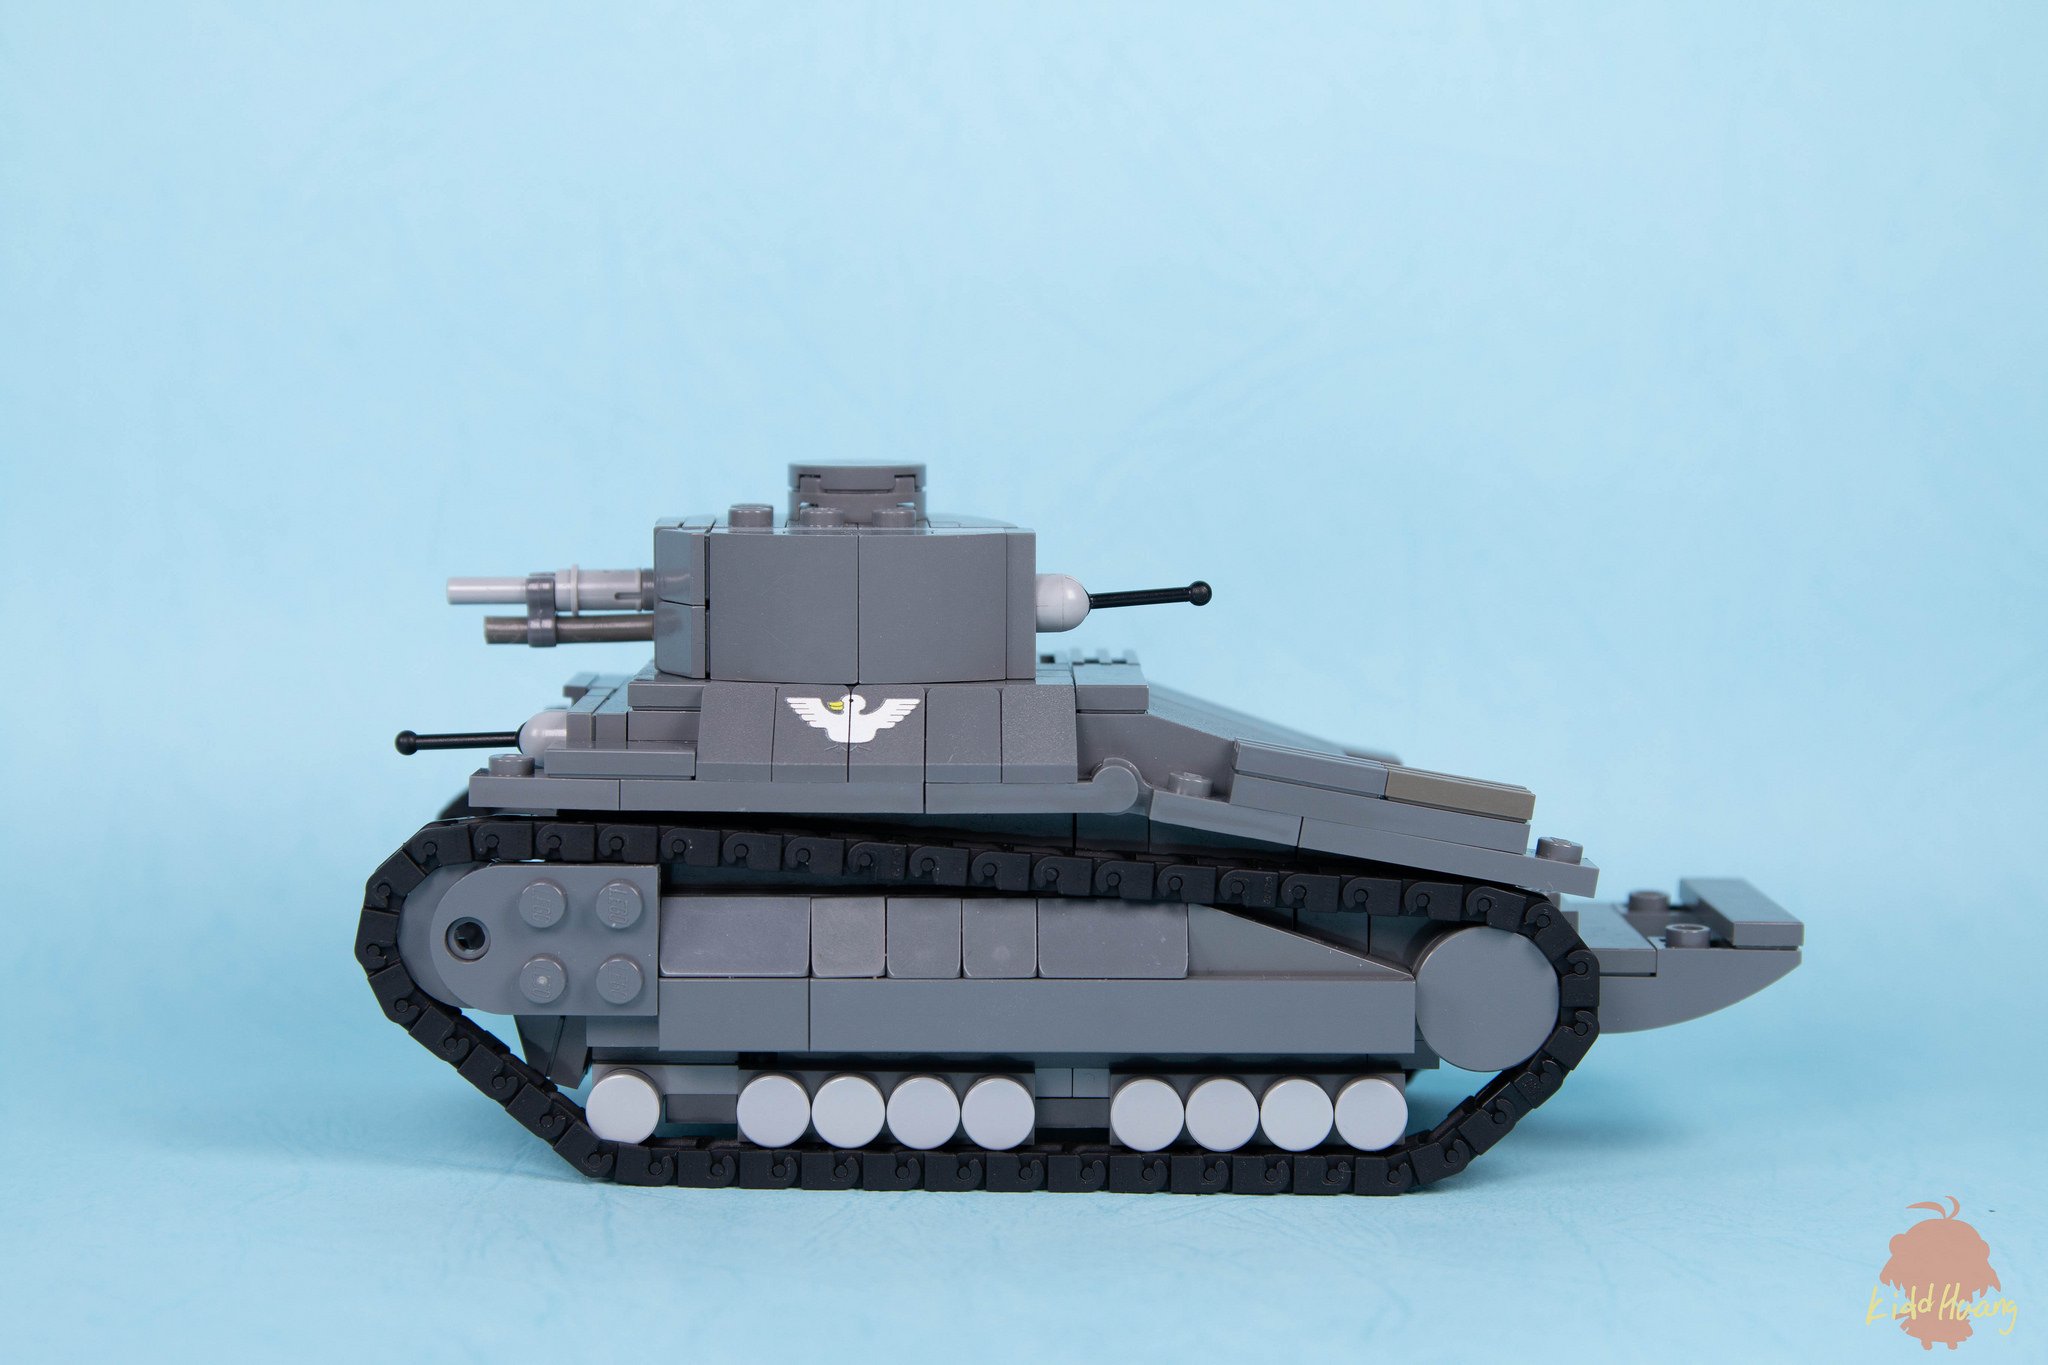 長門k レゴで八九式中戦車を作りました 今回は複雑な作り方があまり使っていないですが ちょっと地味な感じです T Co Wyitnoaufm Twitter